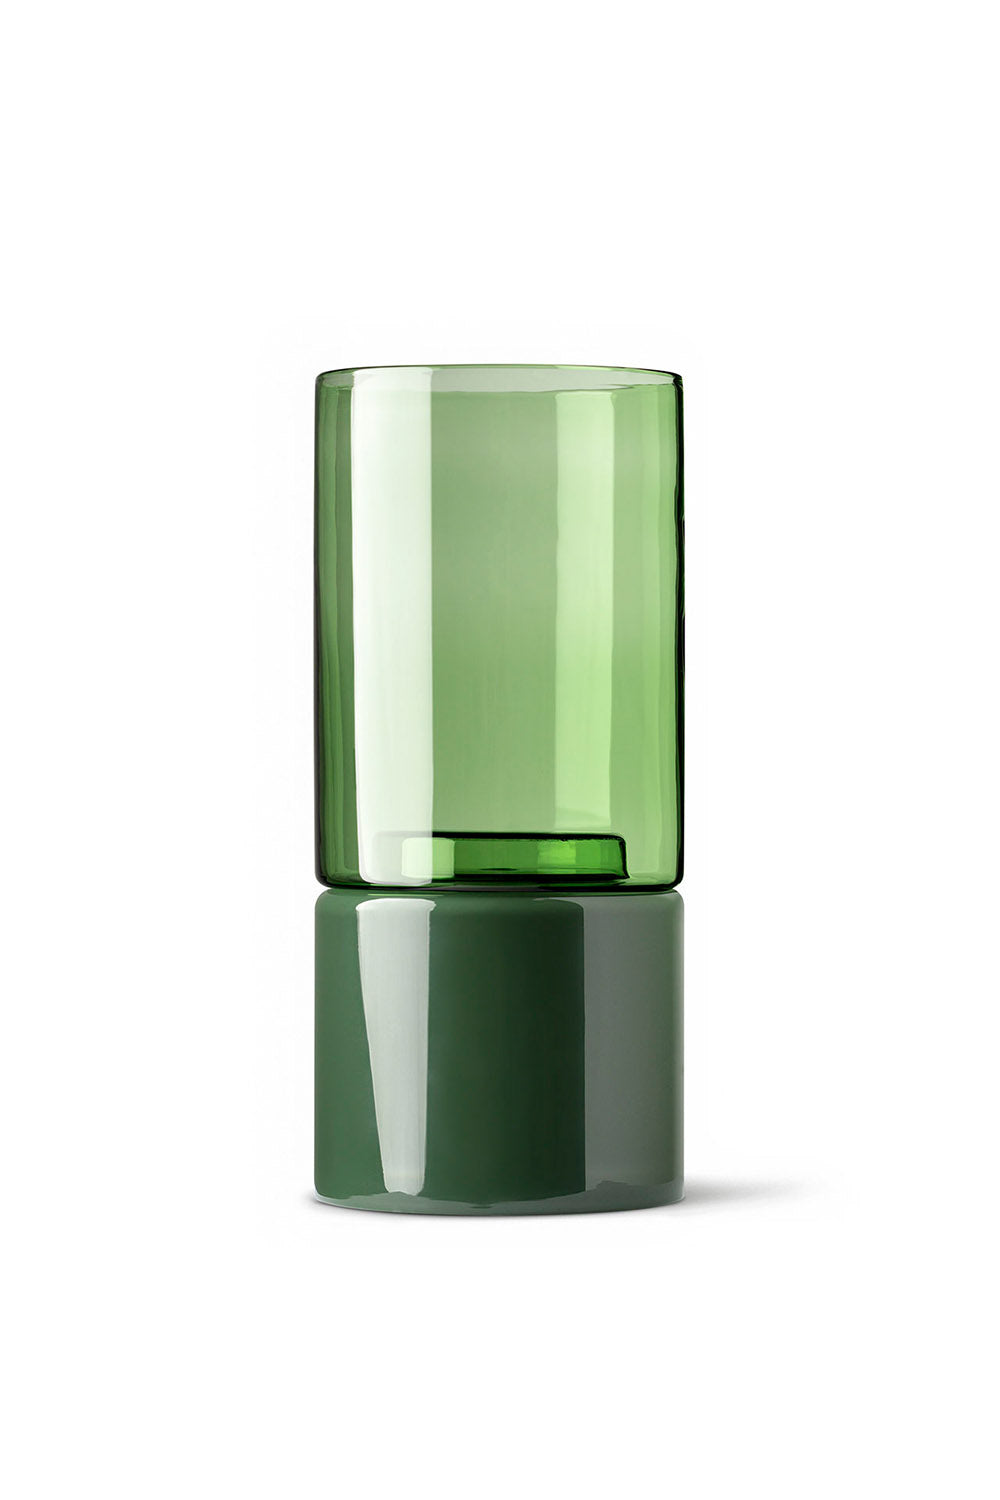 Organic interior - glass flip planter - tall - Green / moss